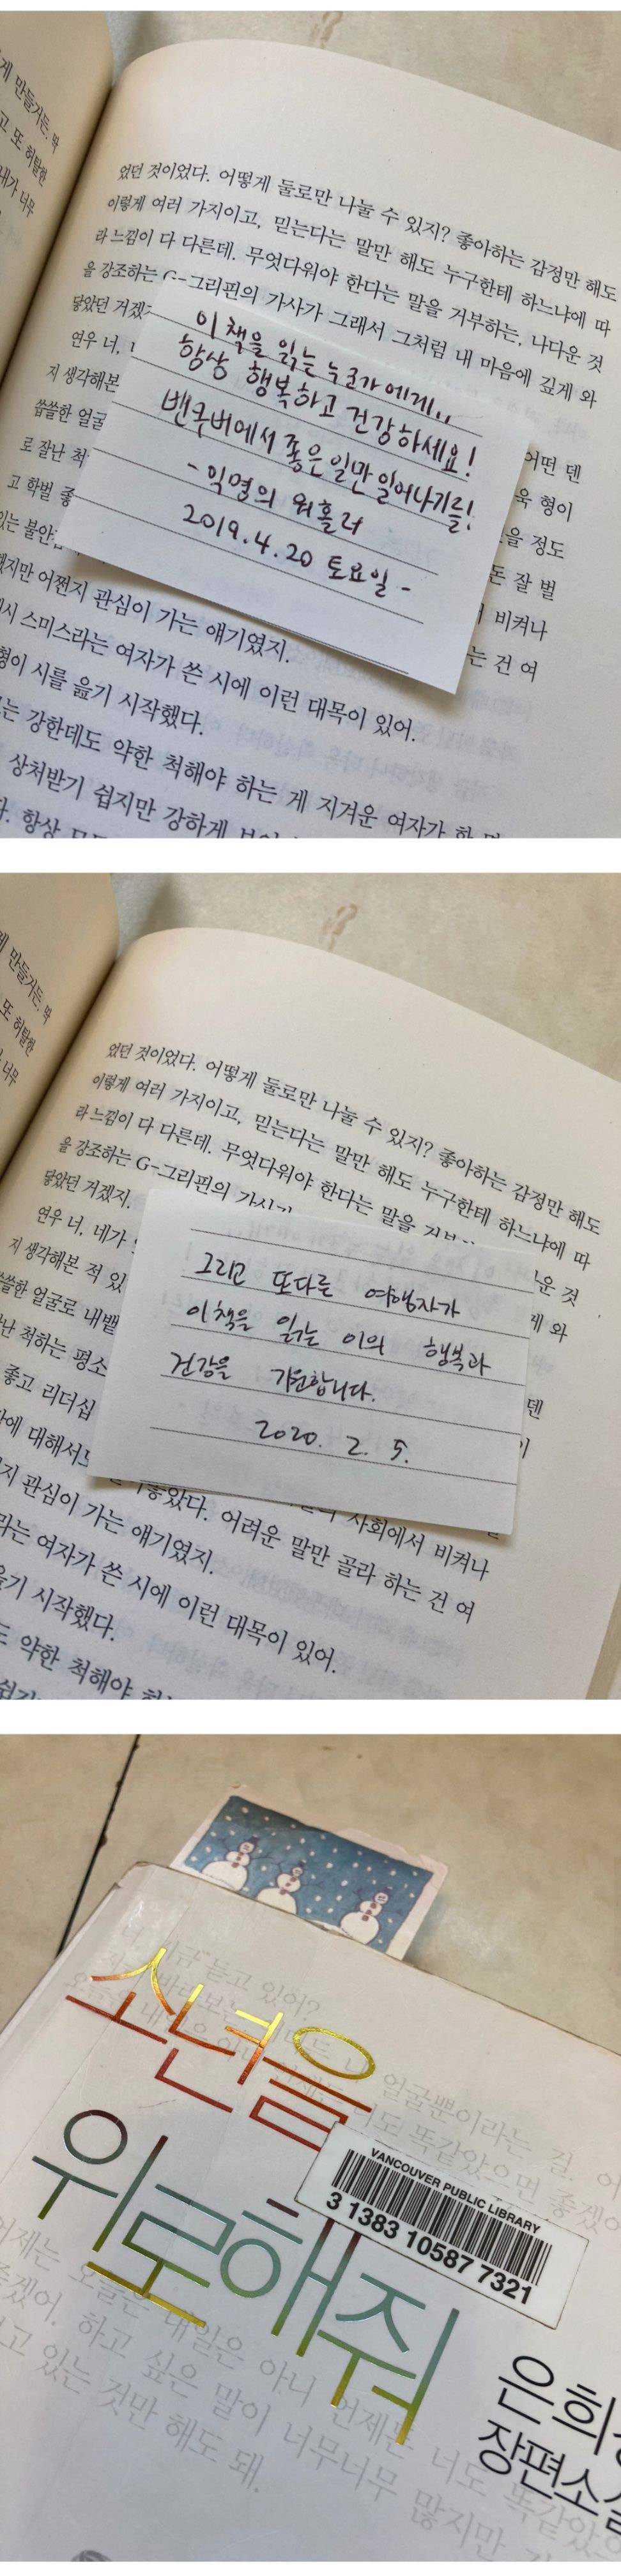 해외도서관에서 한국 책 빌렸는데 이런 쪽지가... | 인스티즈